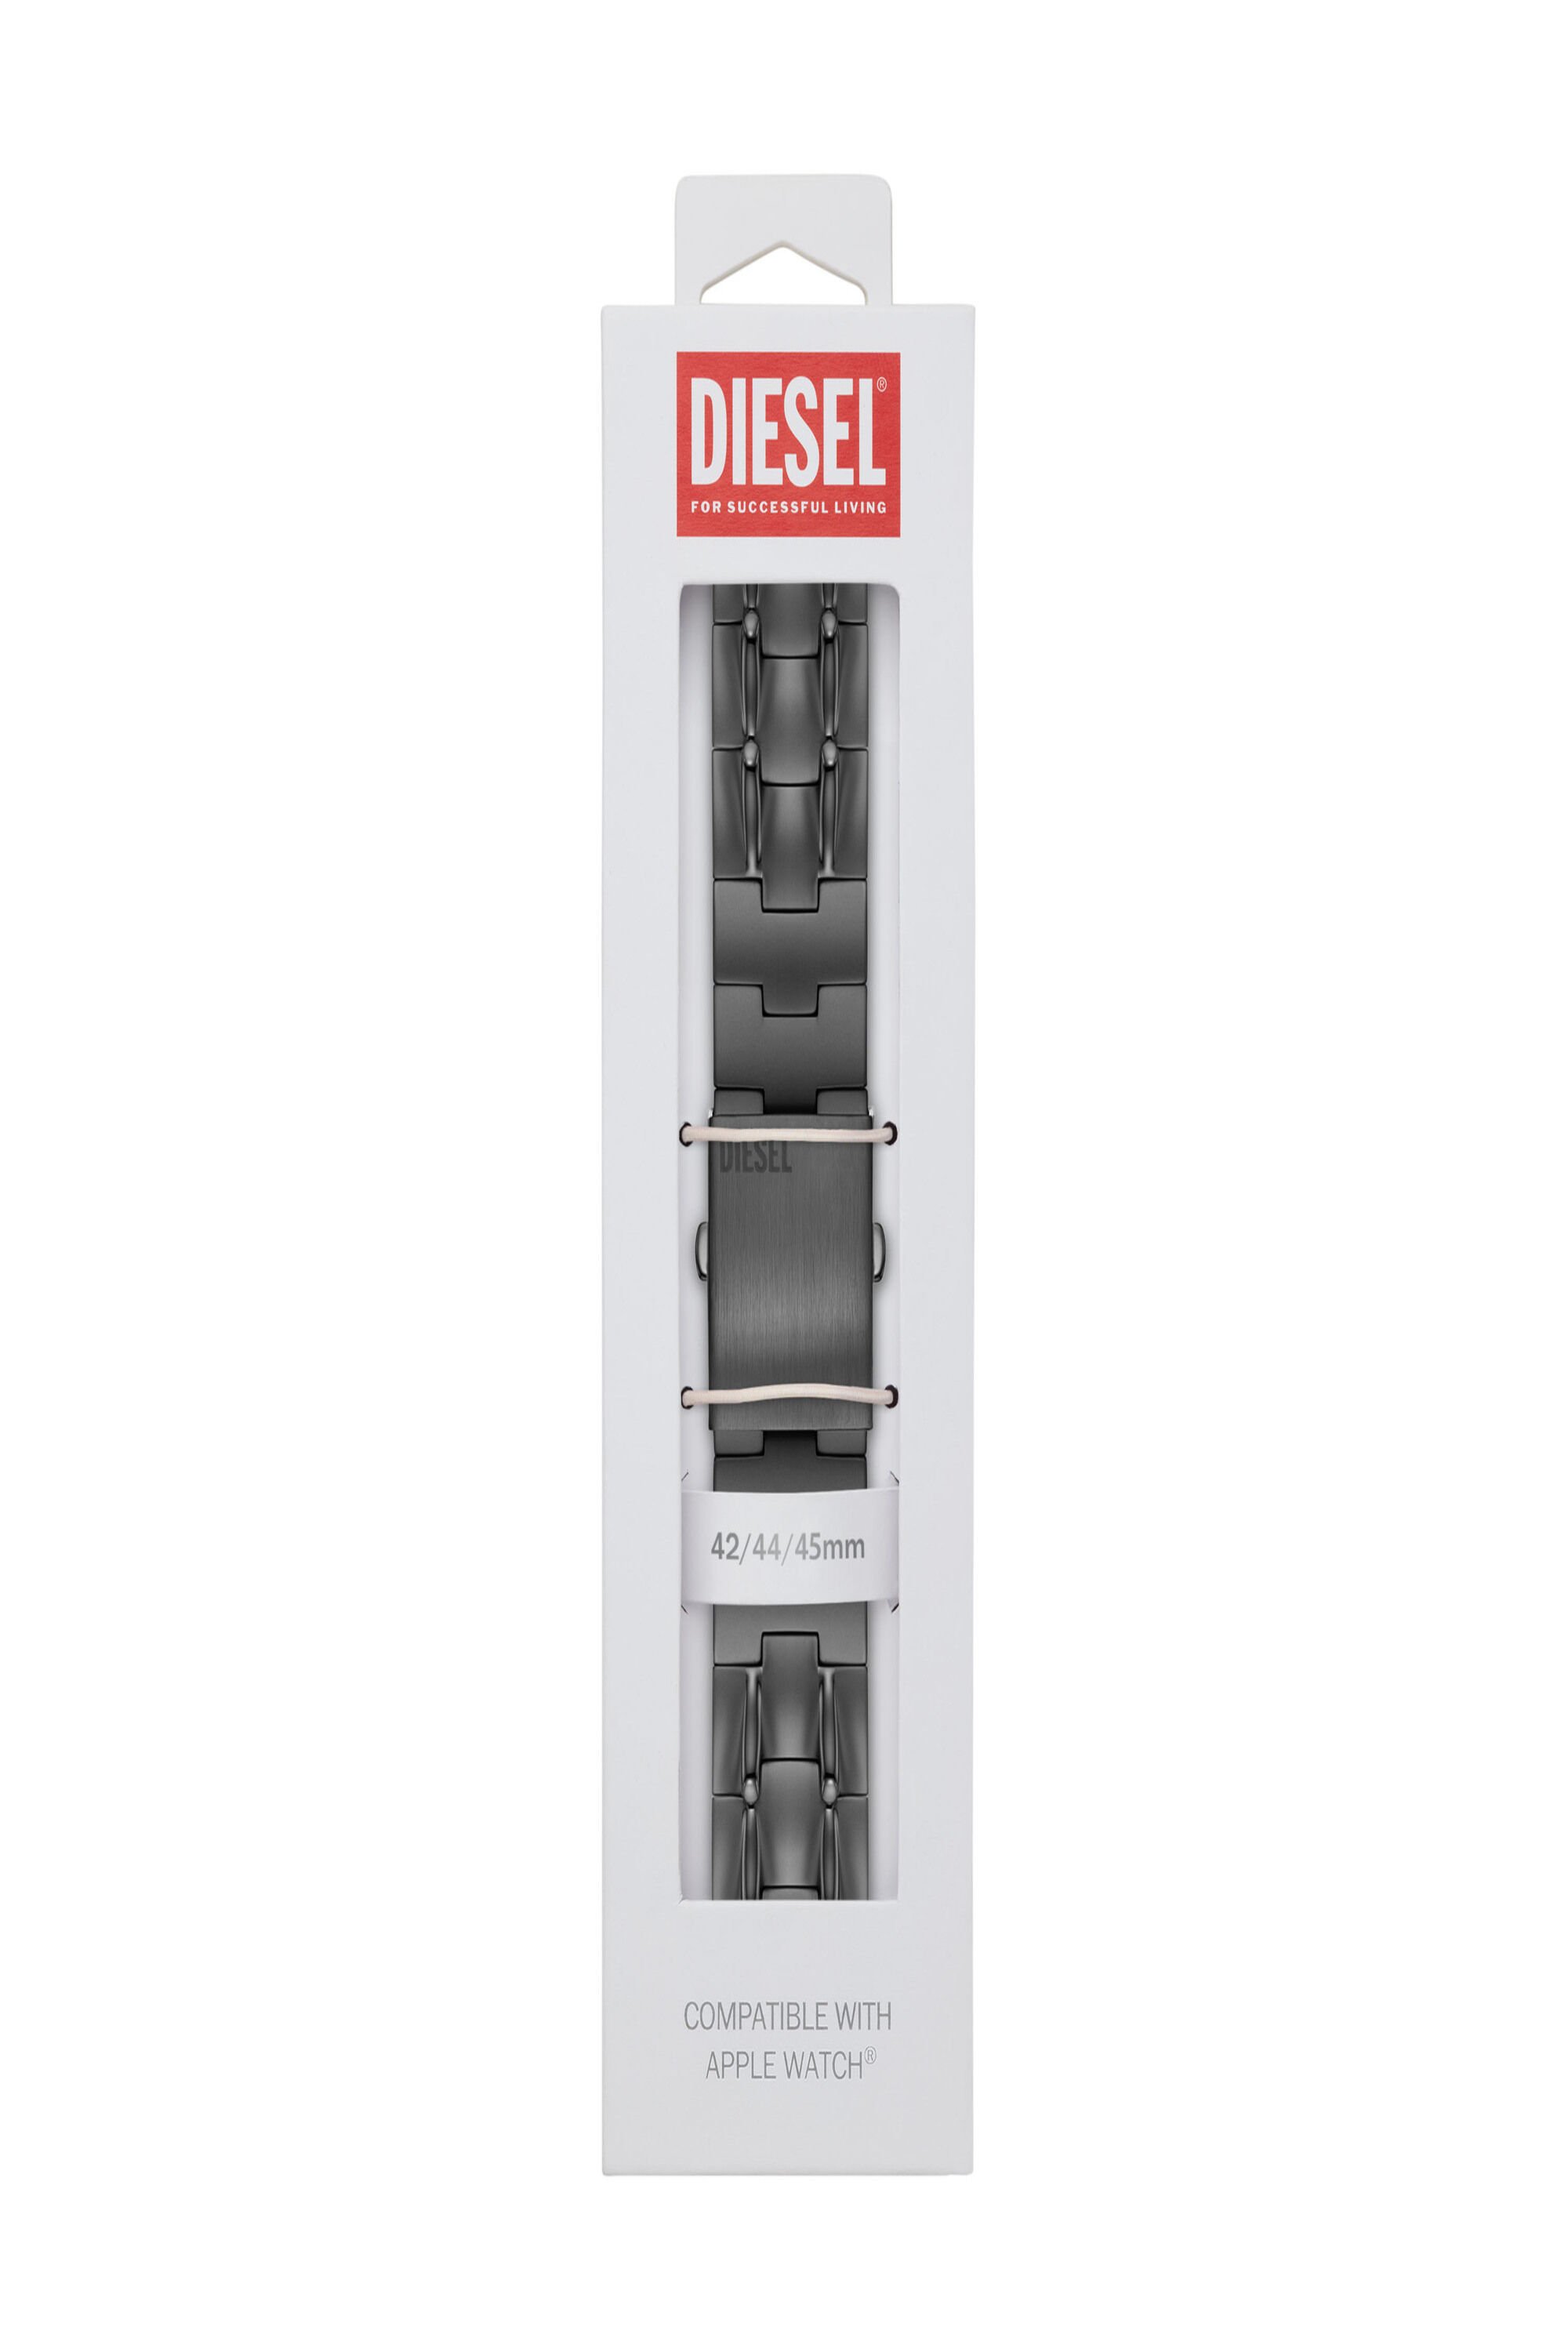 Diesel - DSS0015, グレー - Image 2